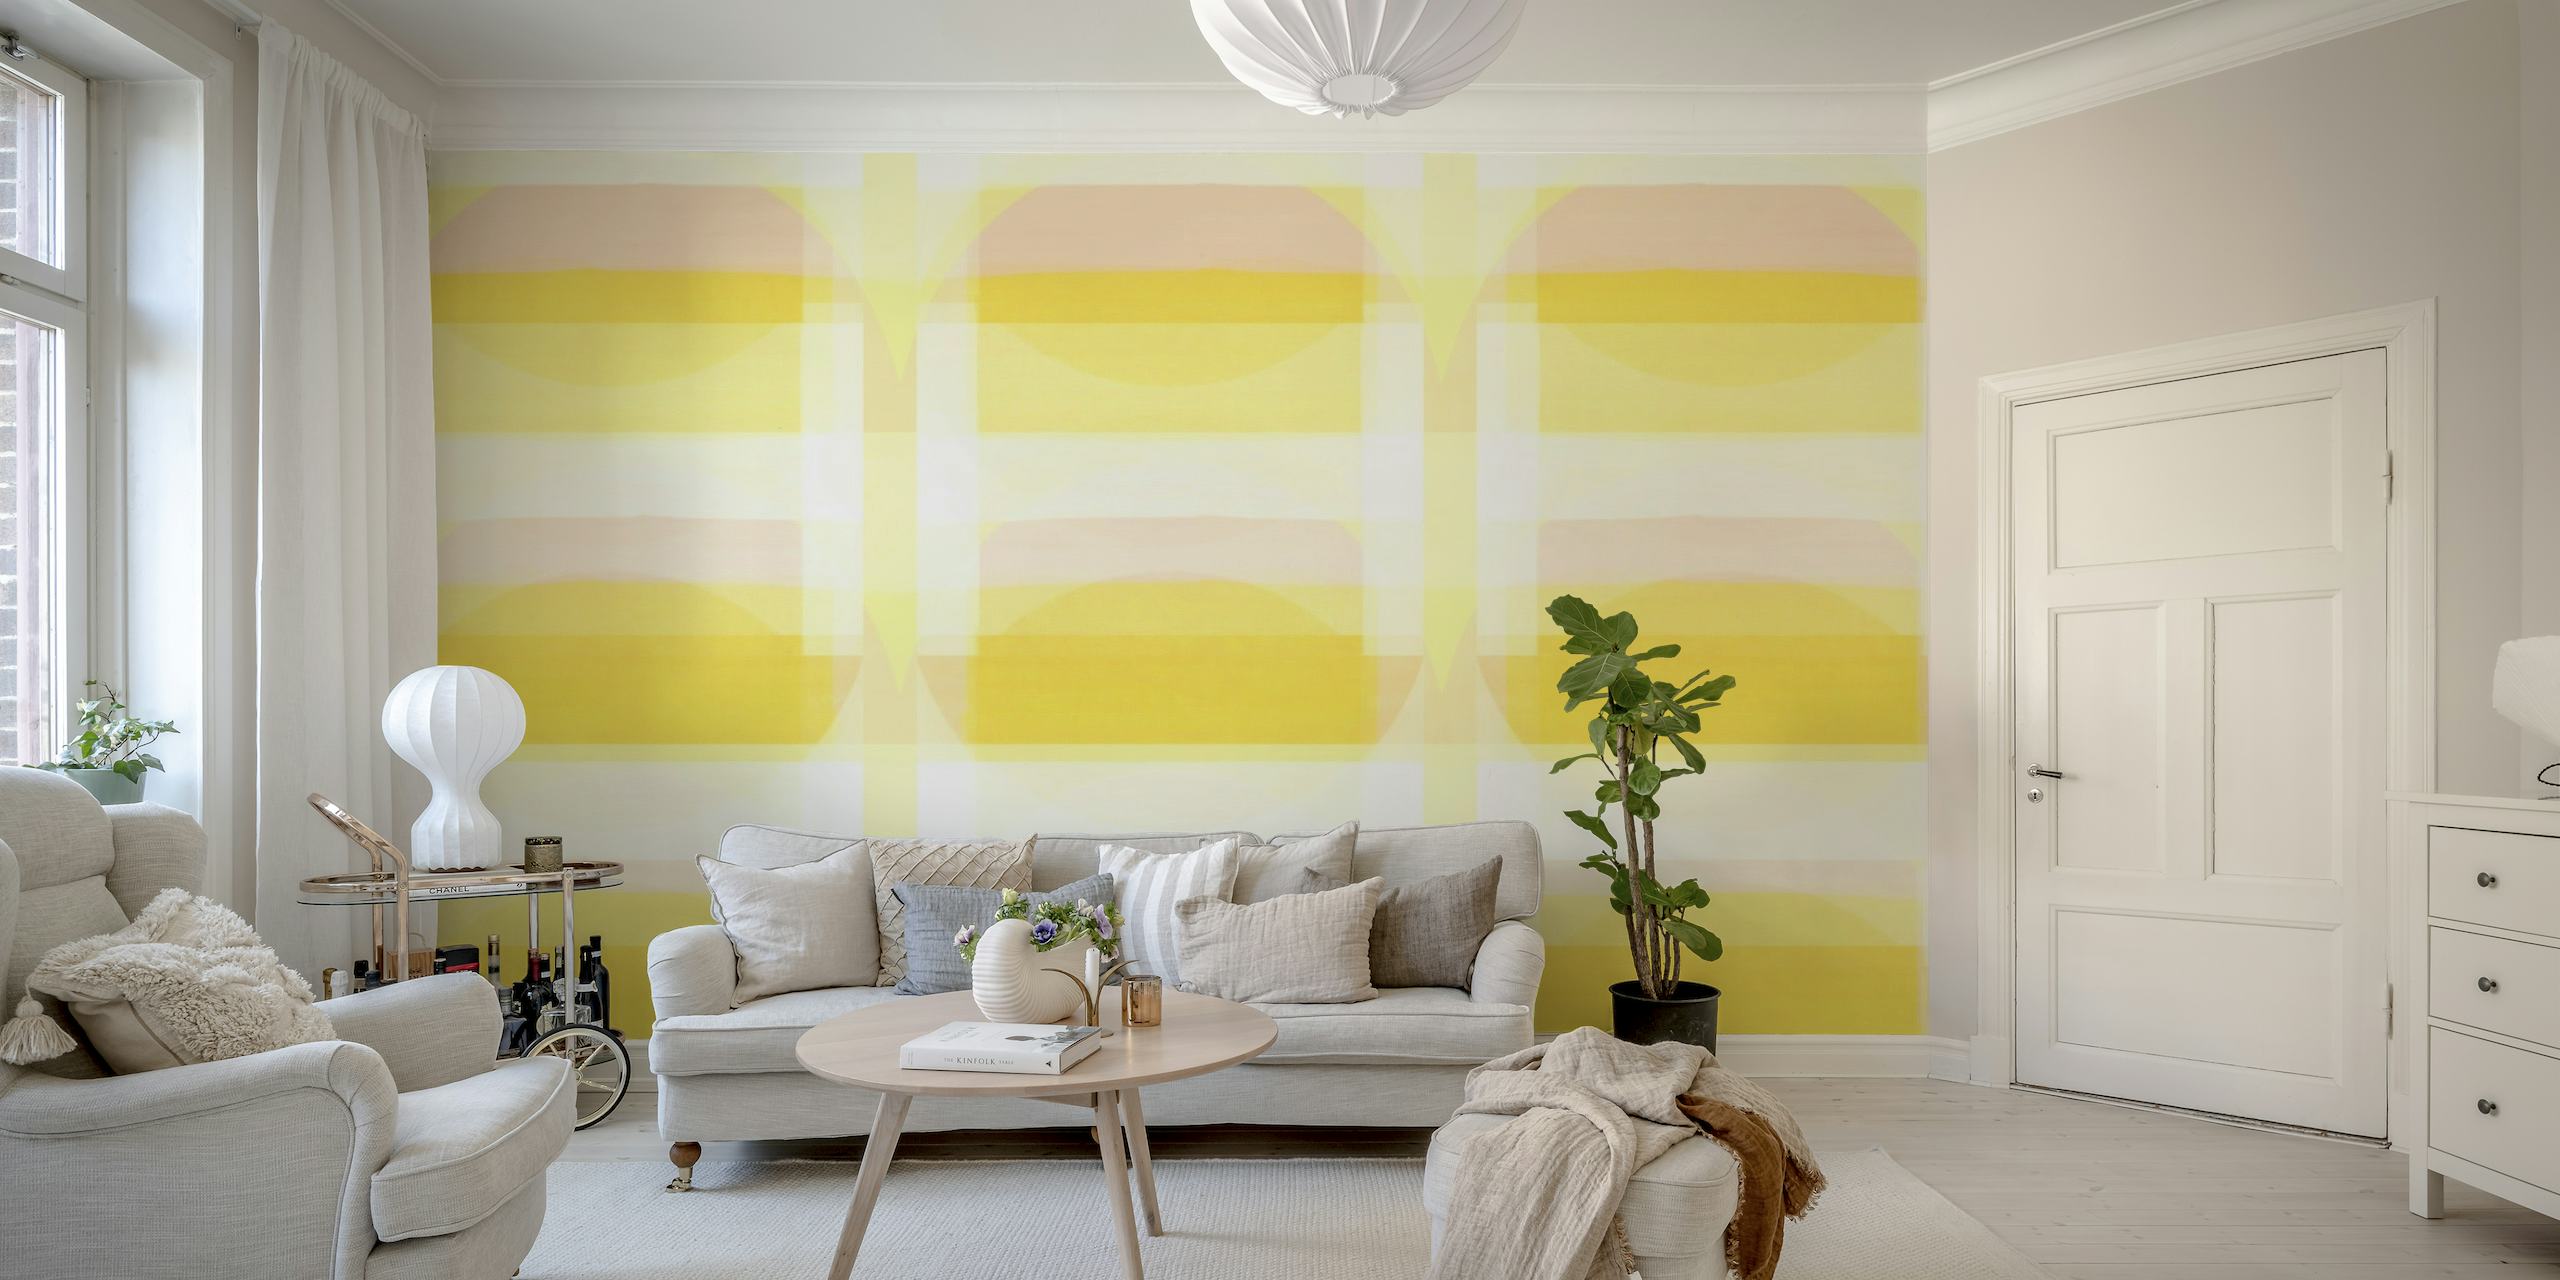 Sunčani Bauhaus zidni mural s geometrijskim uzorkom u pastelno žutoj i bijeloj boji